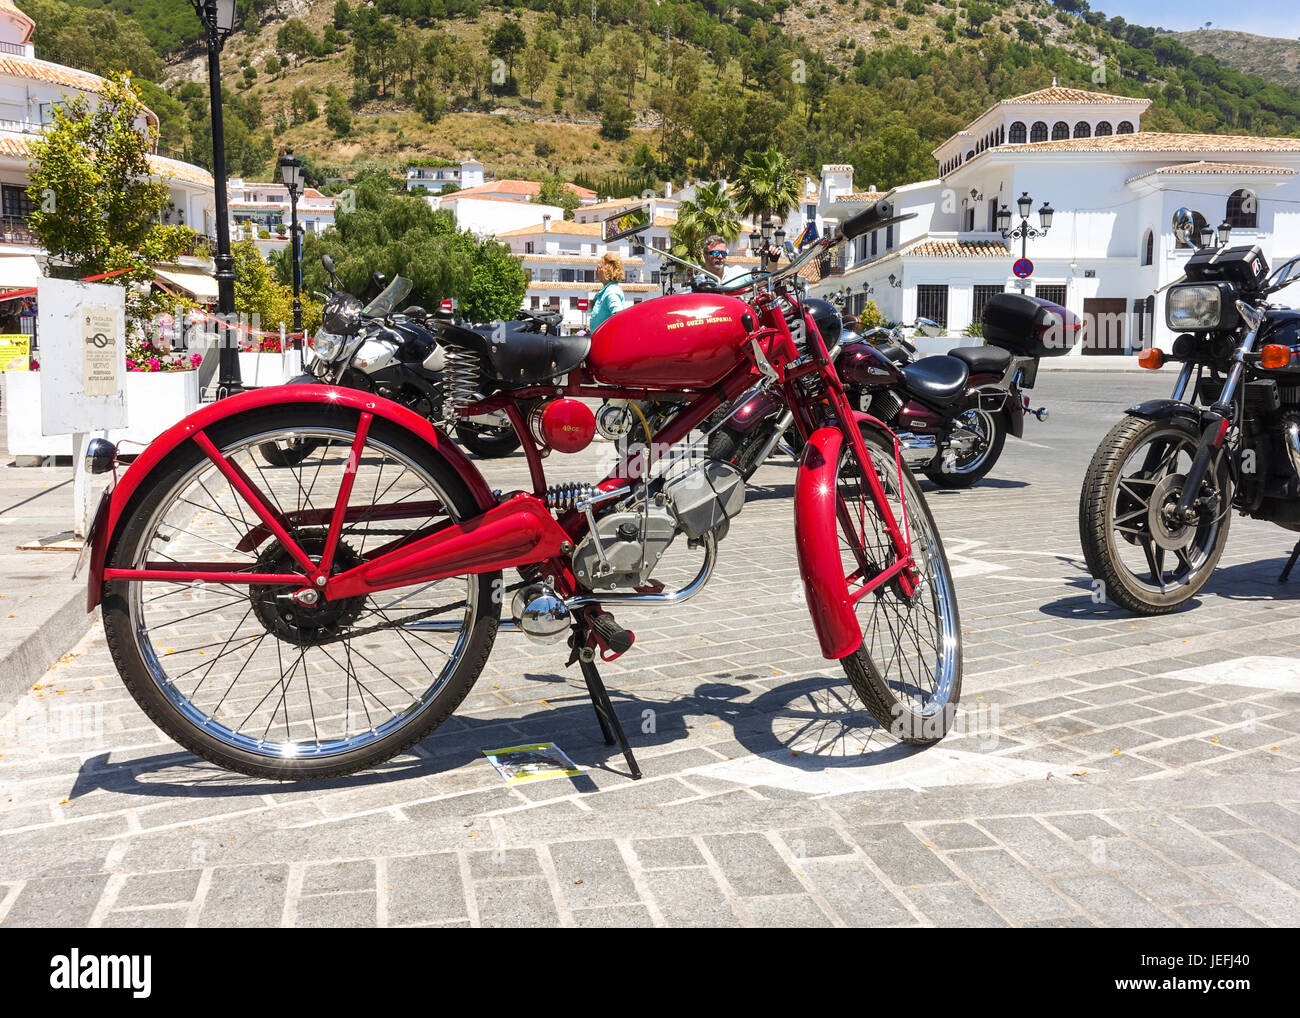 Moto Guzzi hispanic 49cc, vélo classique sur l'affichage à une moto classique rencontre à Mijas, Andalousie, espagne. Banque D'Images